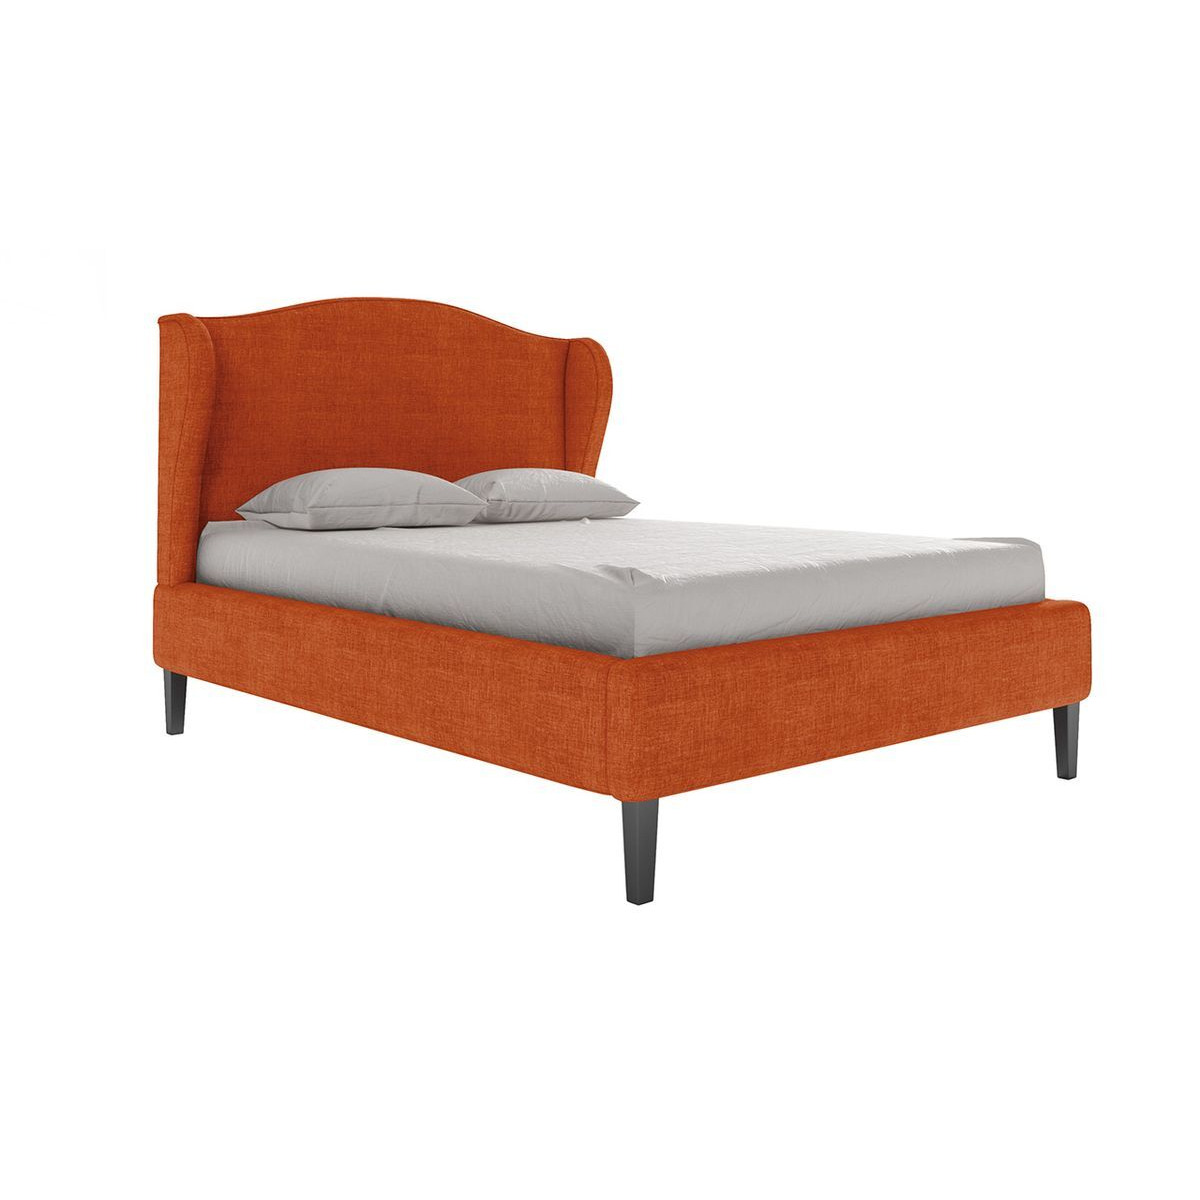 Hope Upholstered Bed Frame, orange - image 1